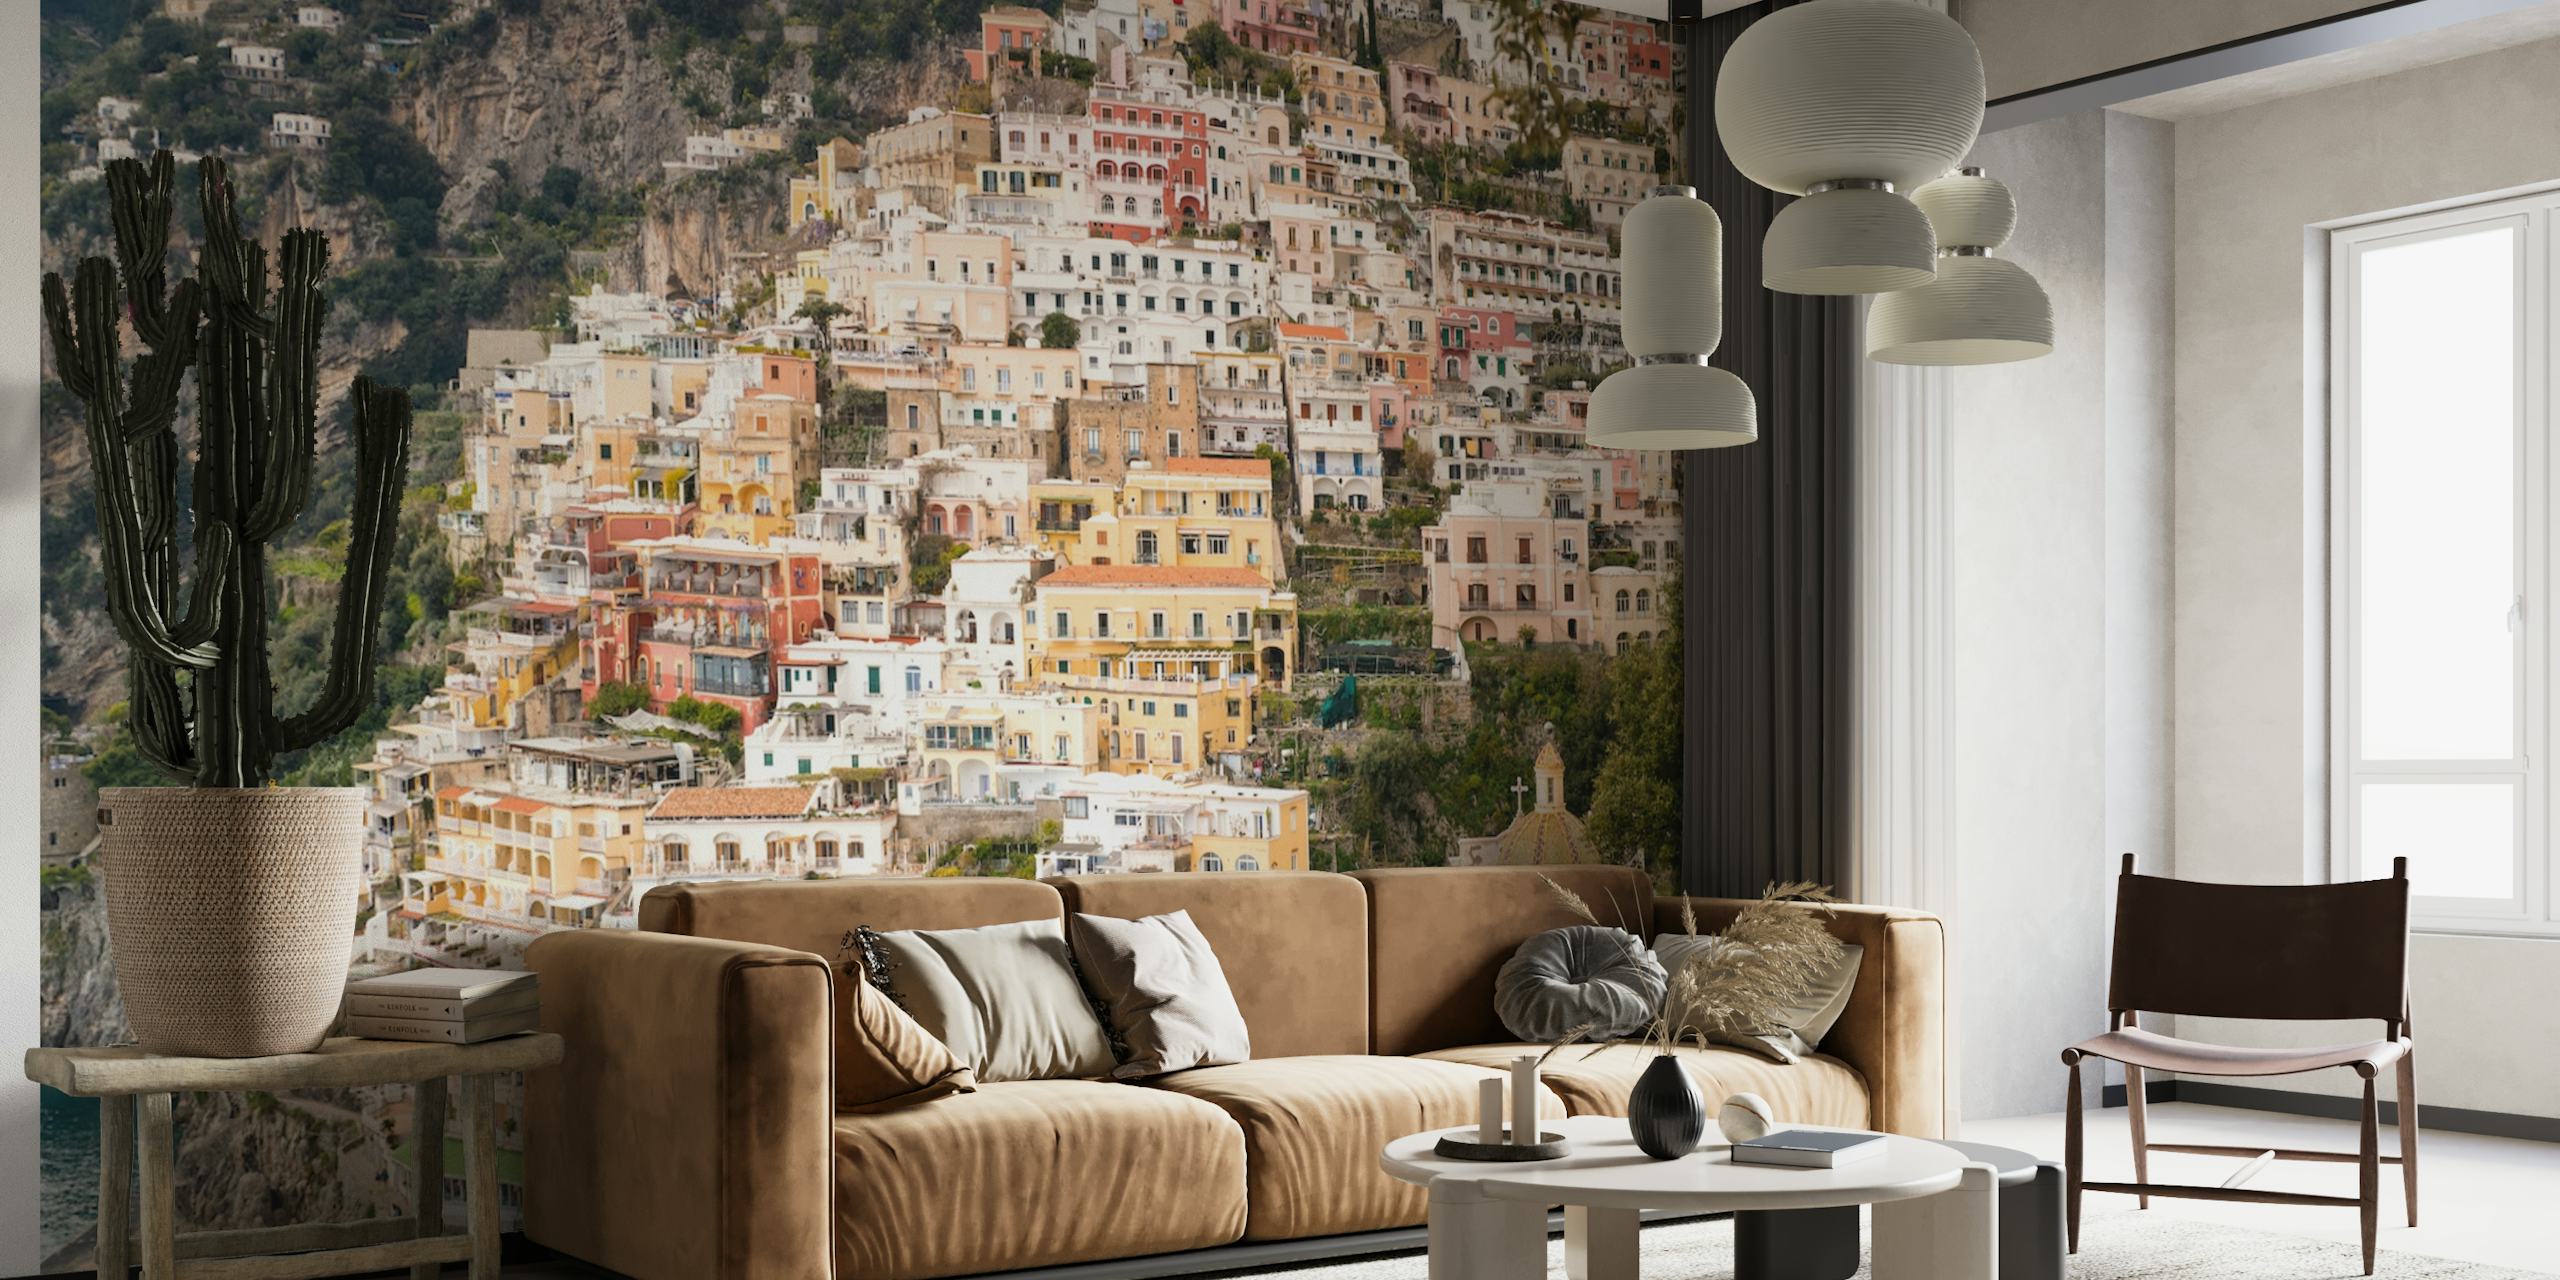 Positano Amalfikust muurschildering met kleurrijke gebouwen en mediterrane sfeer